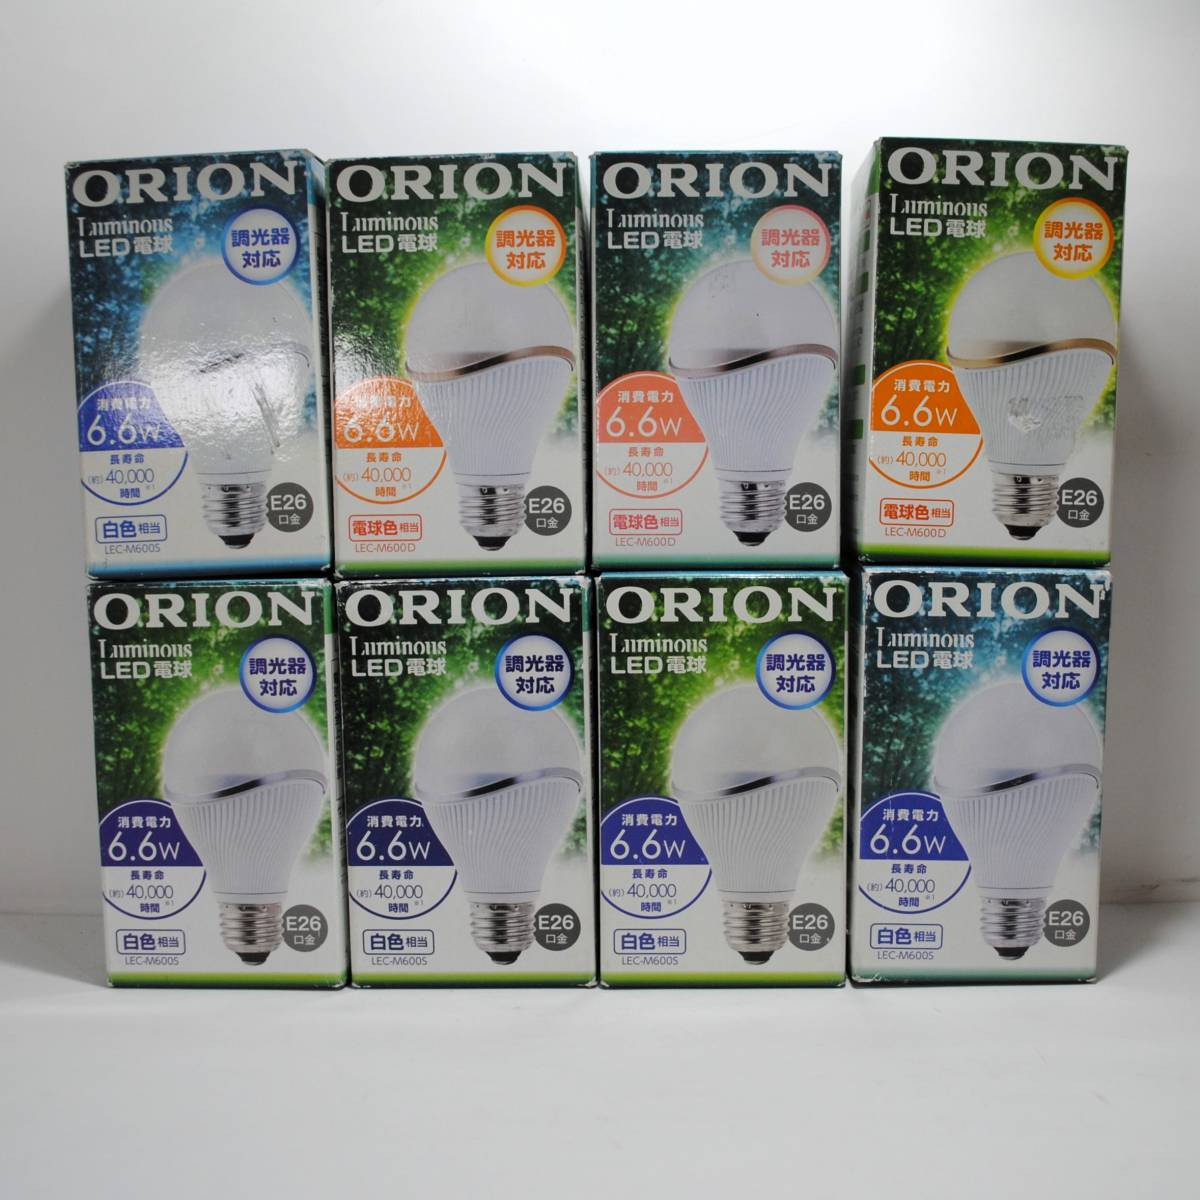 新品 未使用 オリオン ORION 調光器対応 LED電球 8個セット E26口金 消費電力6.6W 電球色5個 白色3個 LEC-M600D LEC-M600S